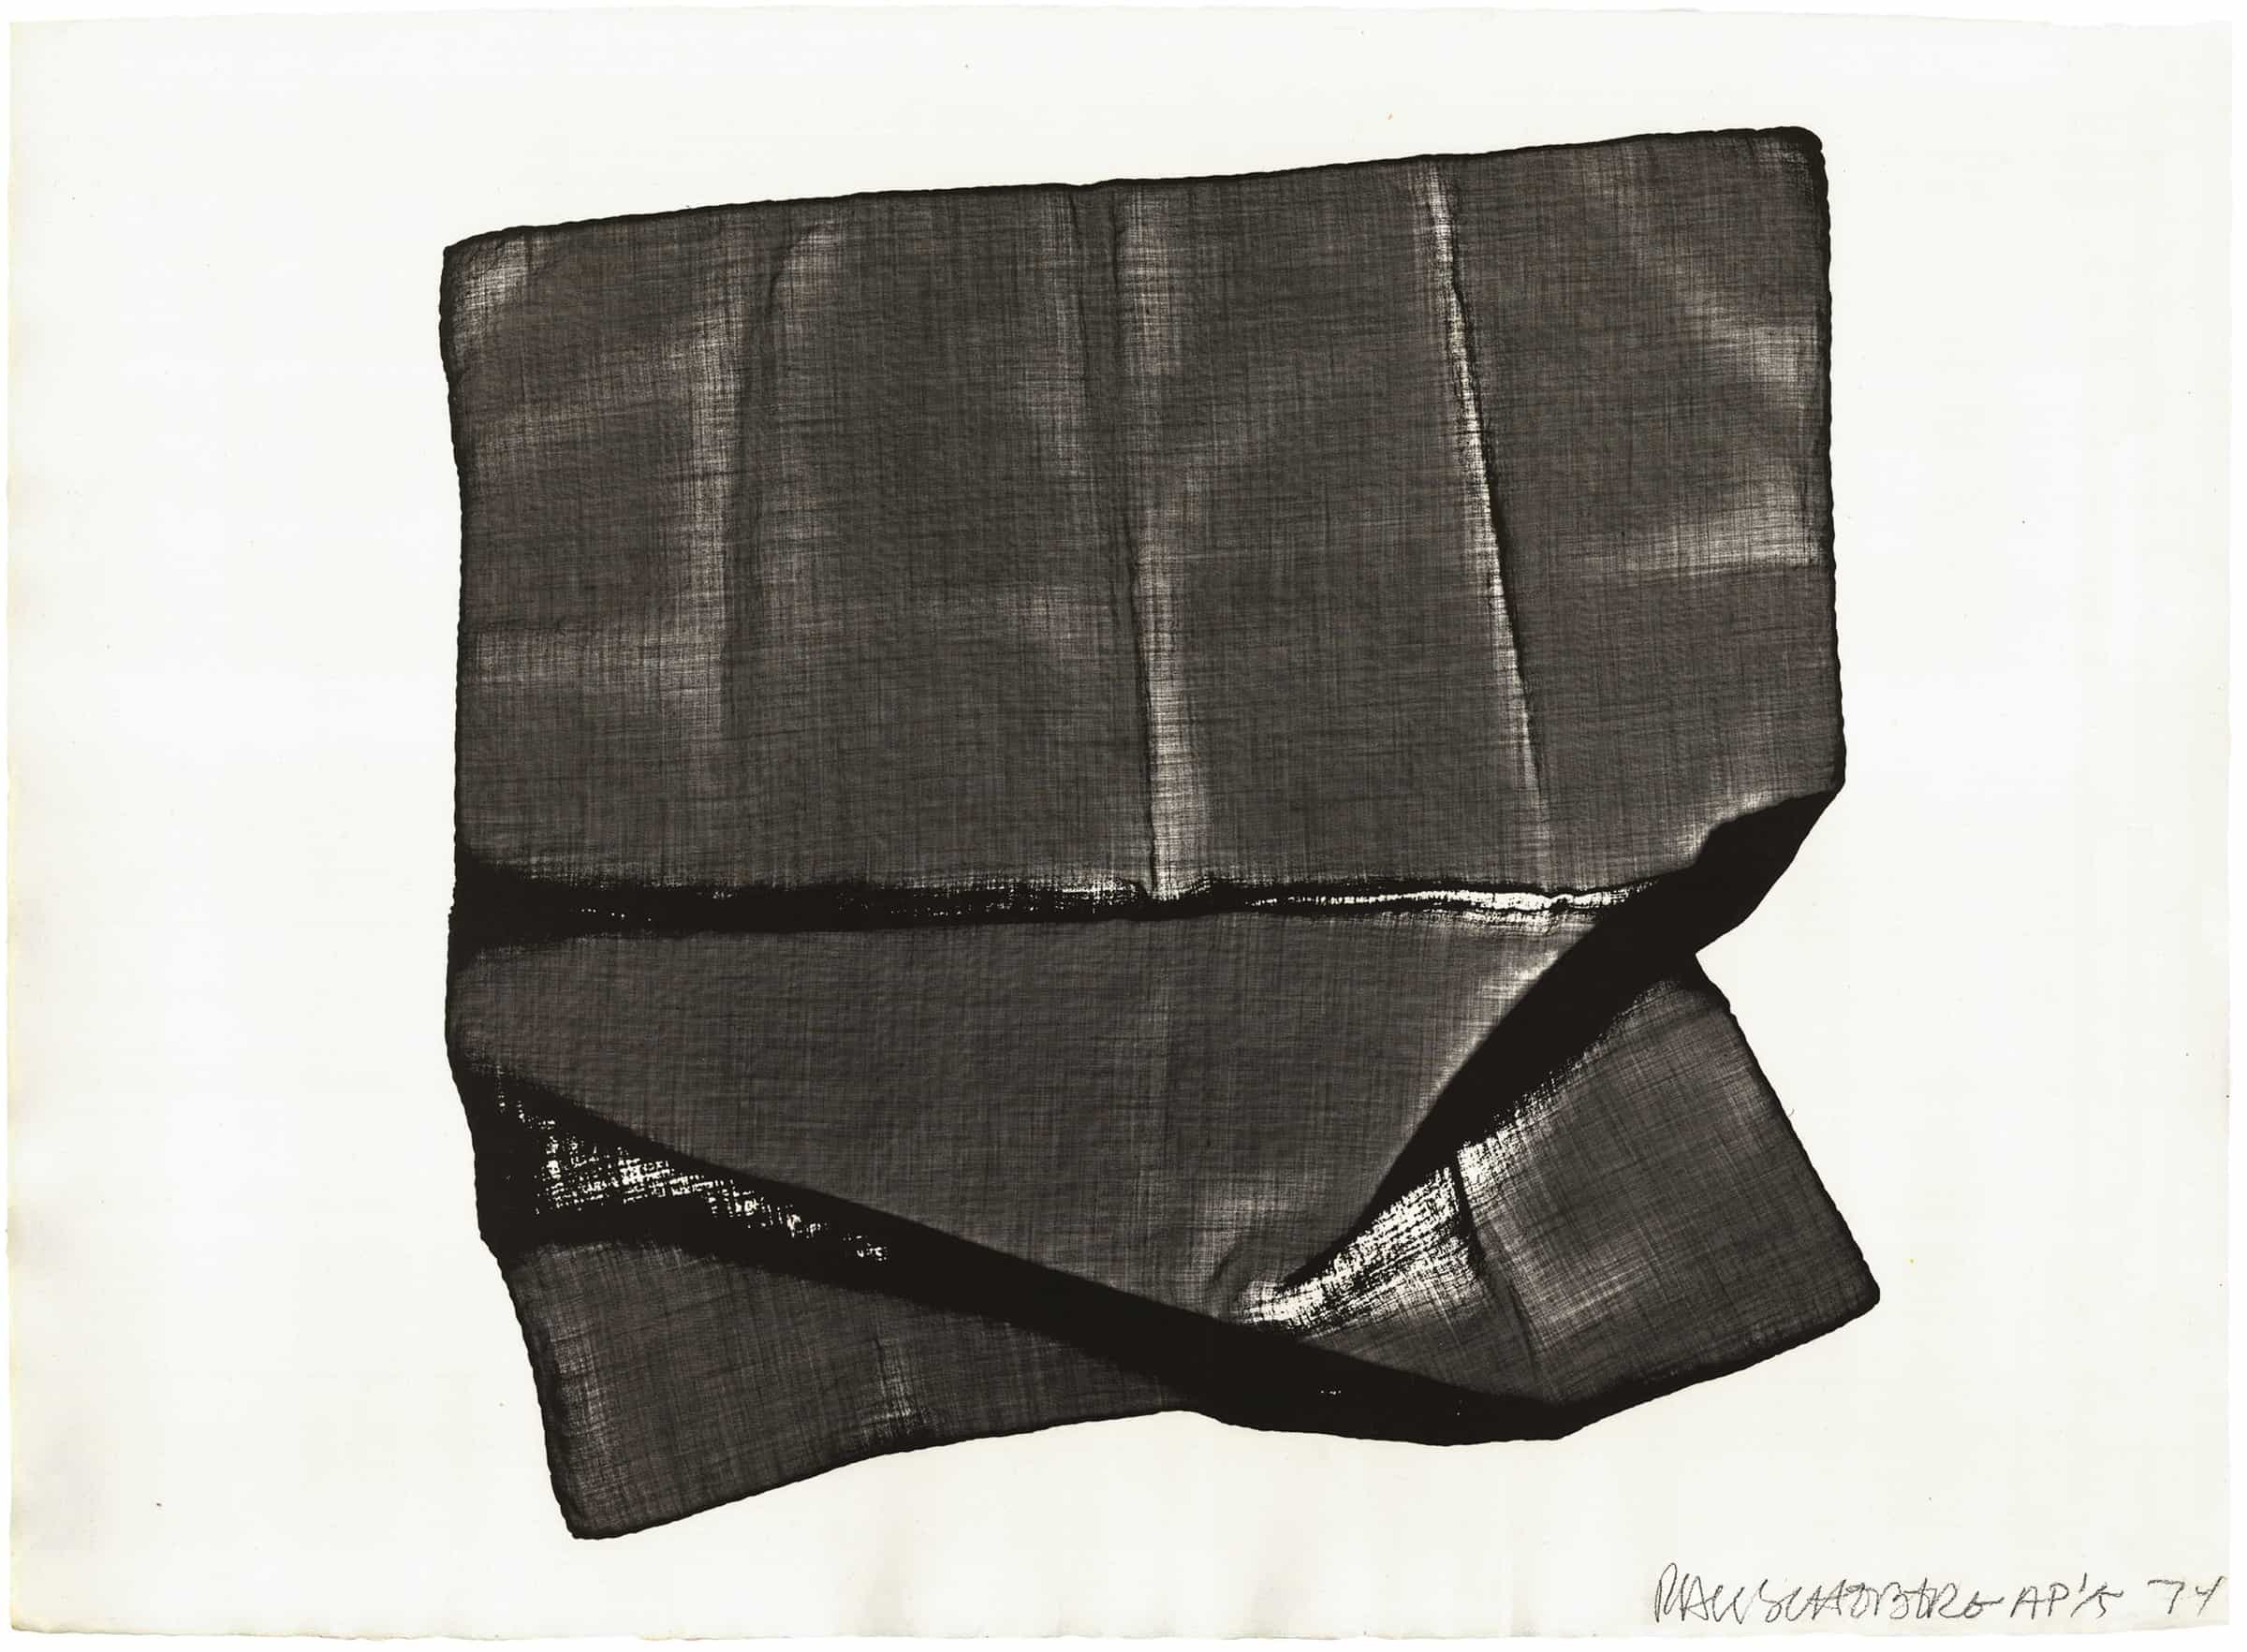 Robert Rauschenberg, Veils 1, 1974